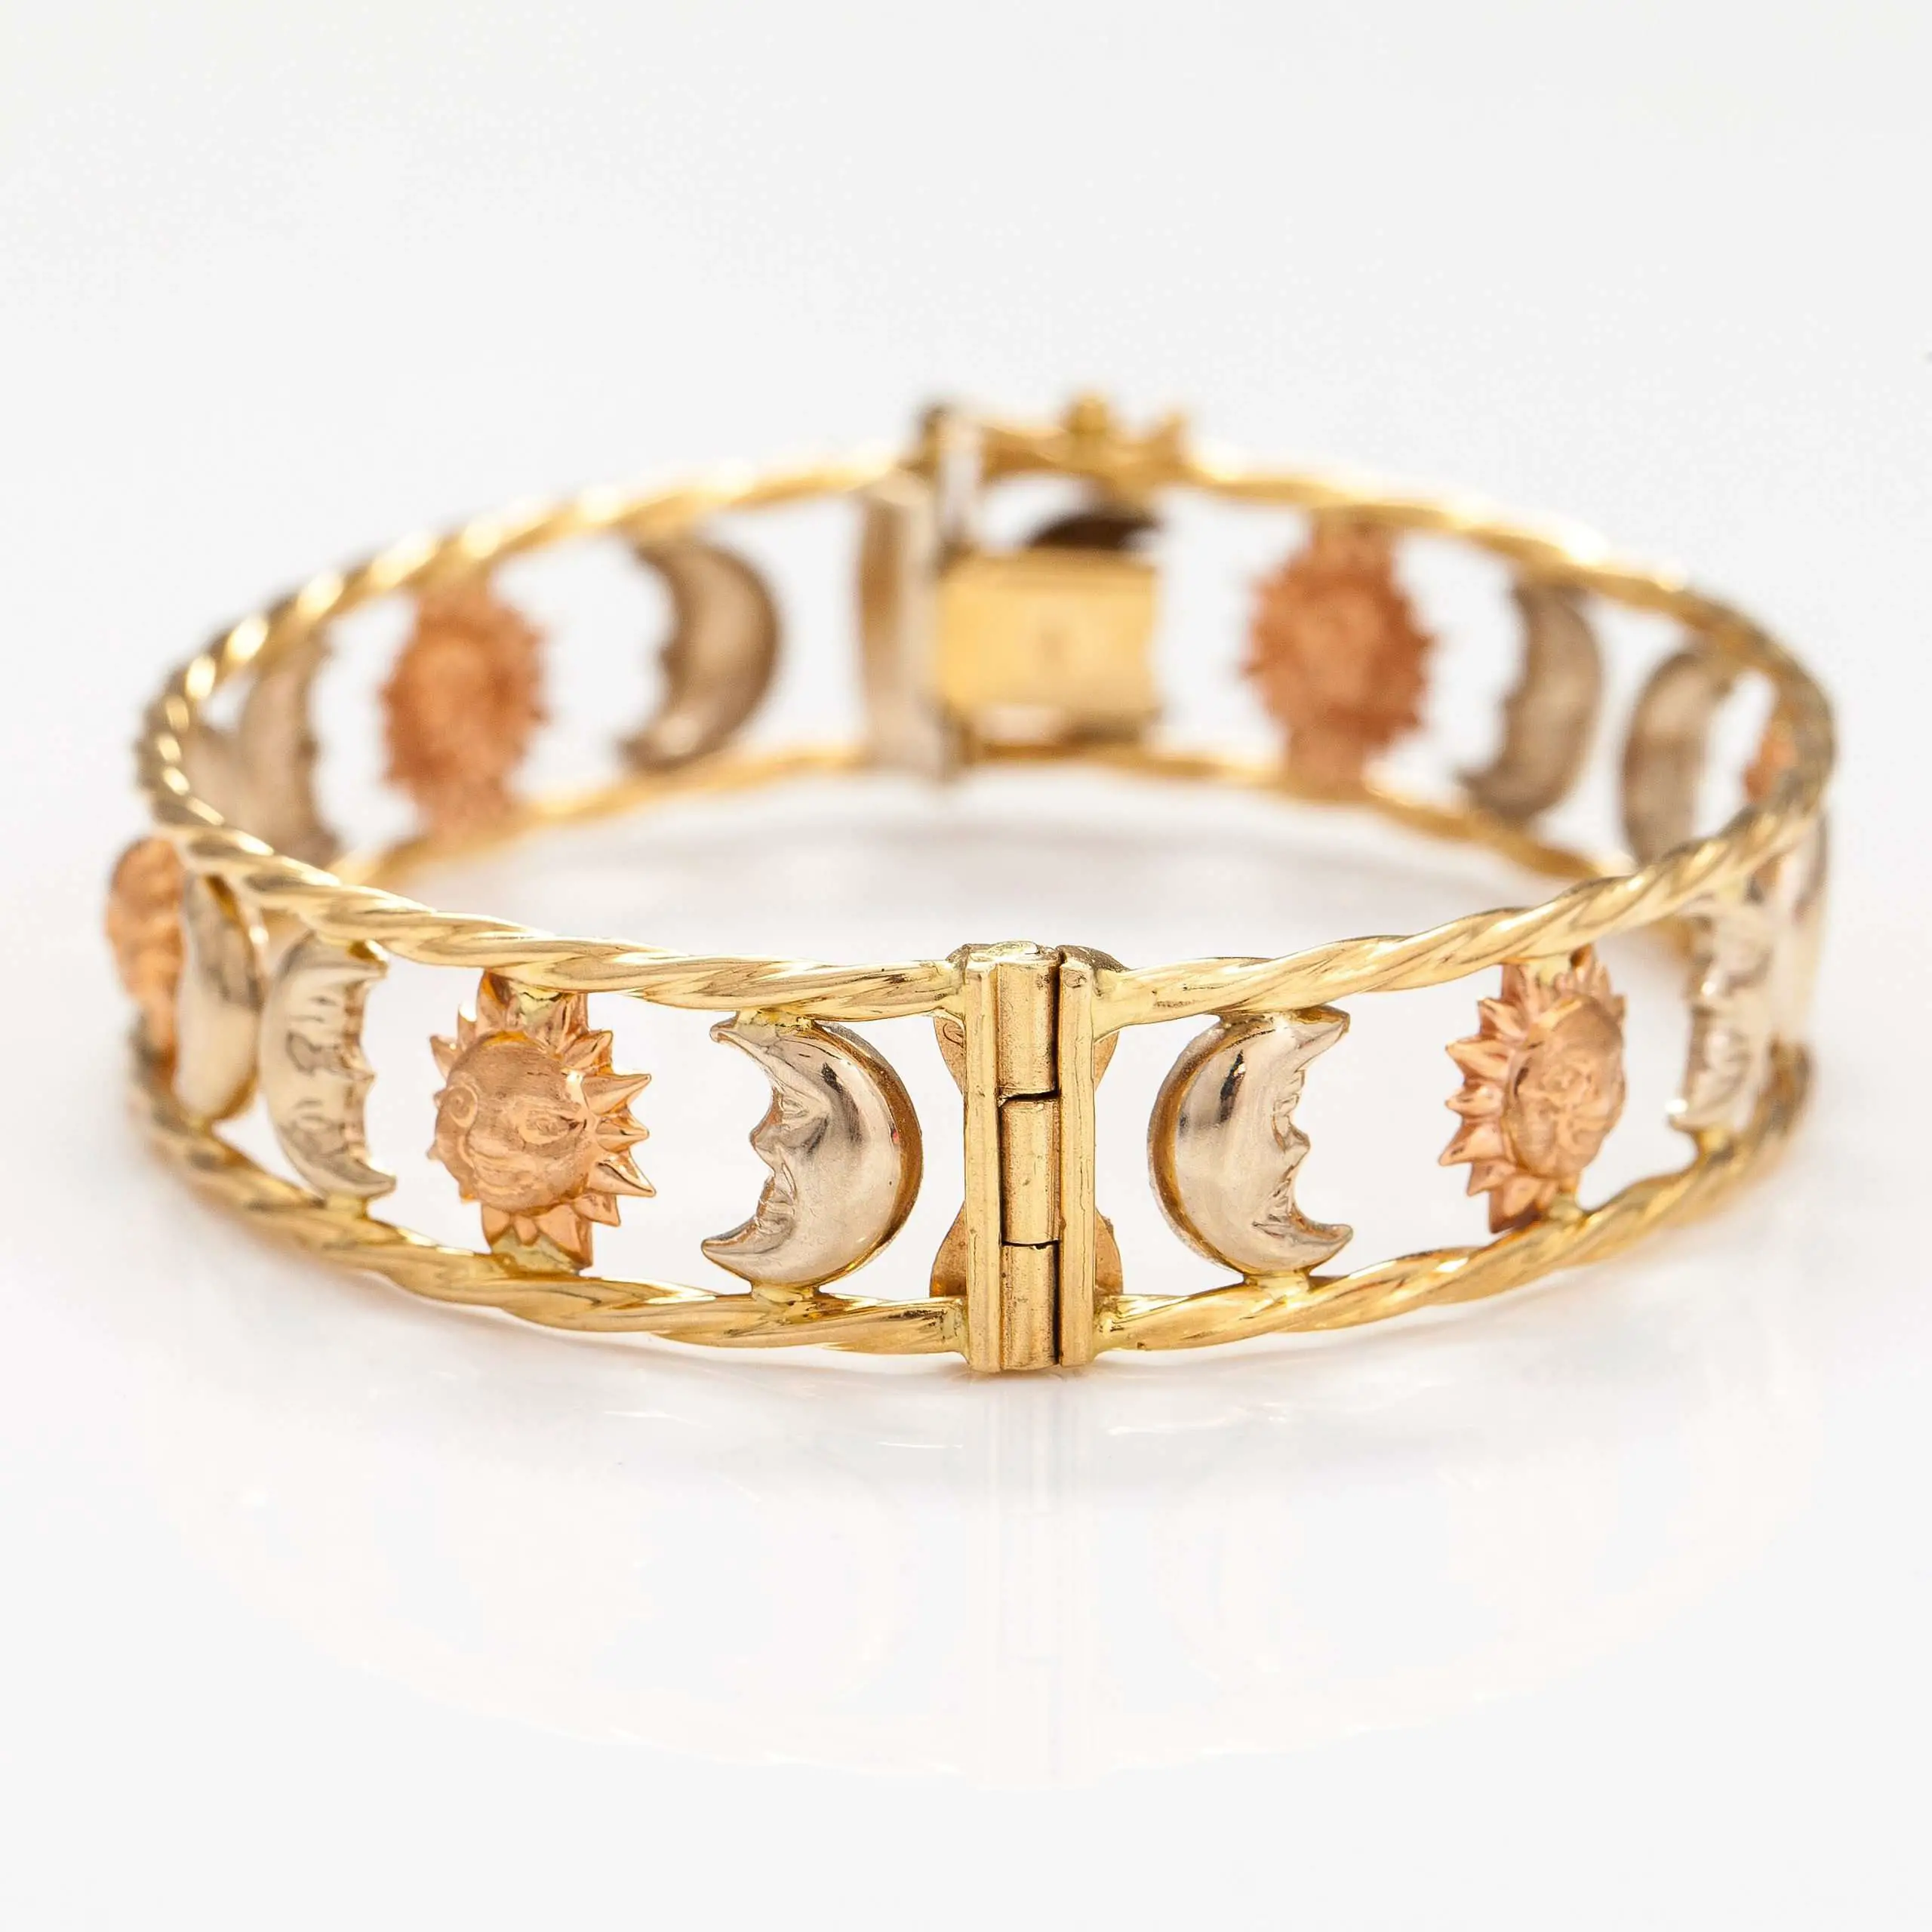    18k gold price bracelet ...